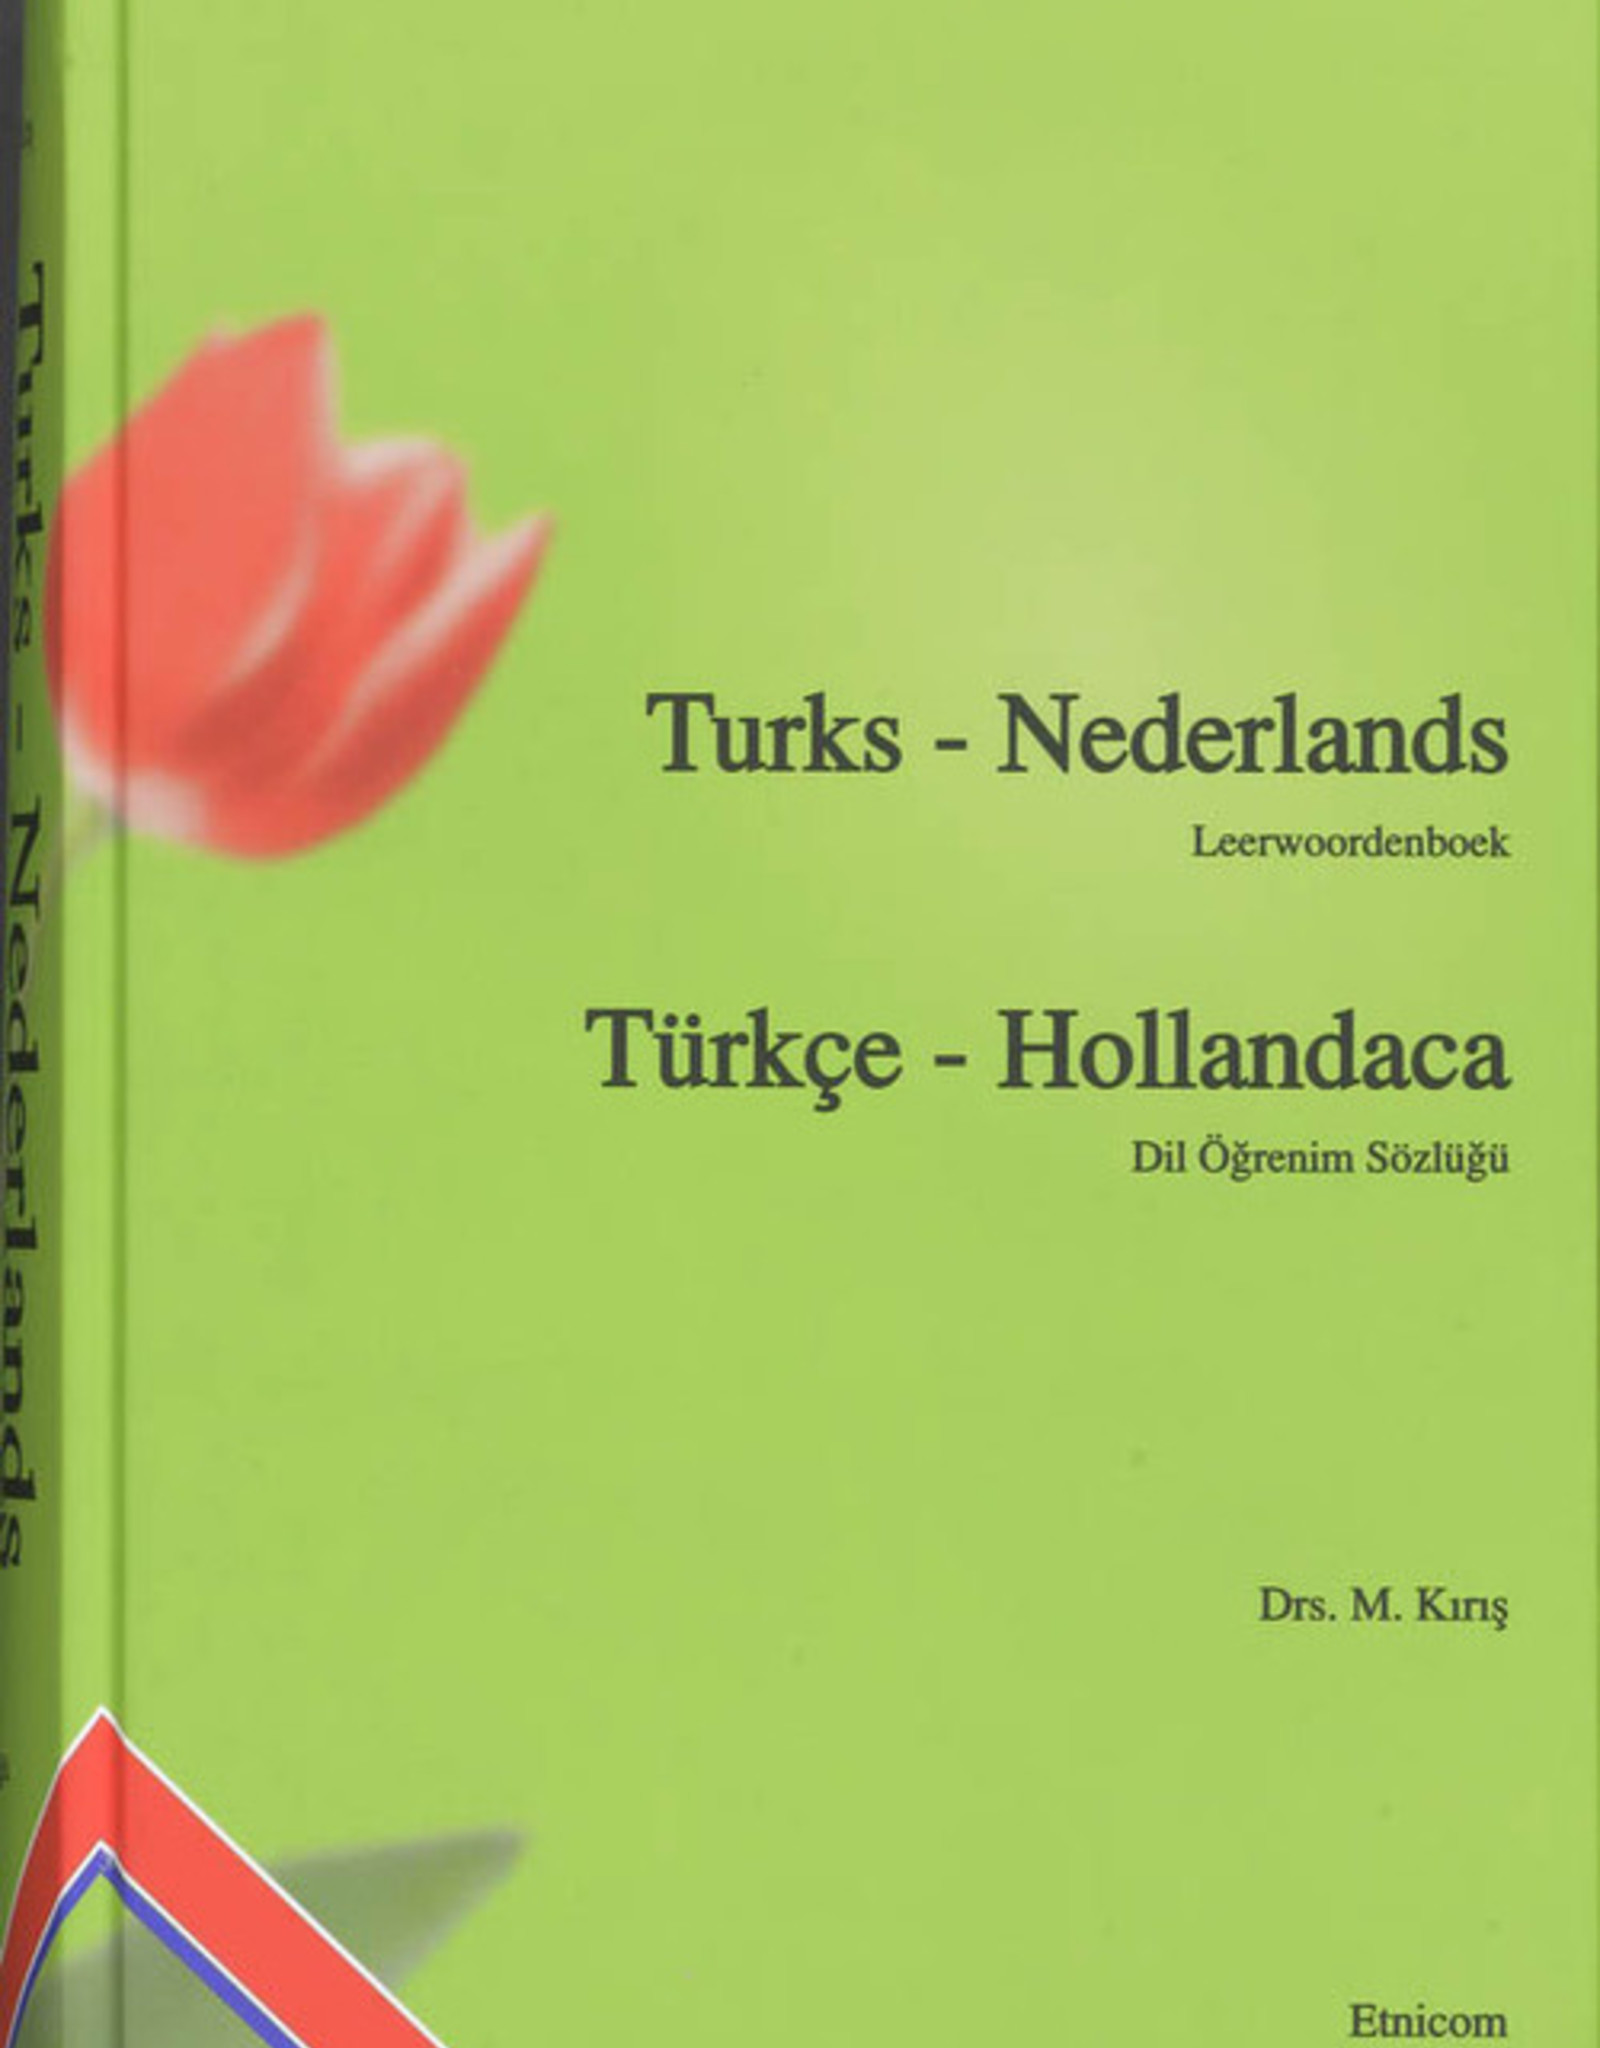 Sözlük Büyük Boy Turks - Nederlands Leerwoordenboek